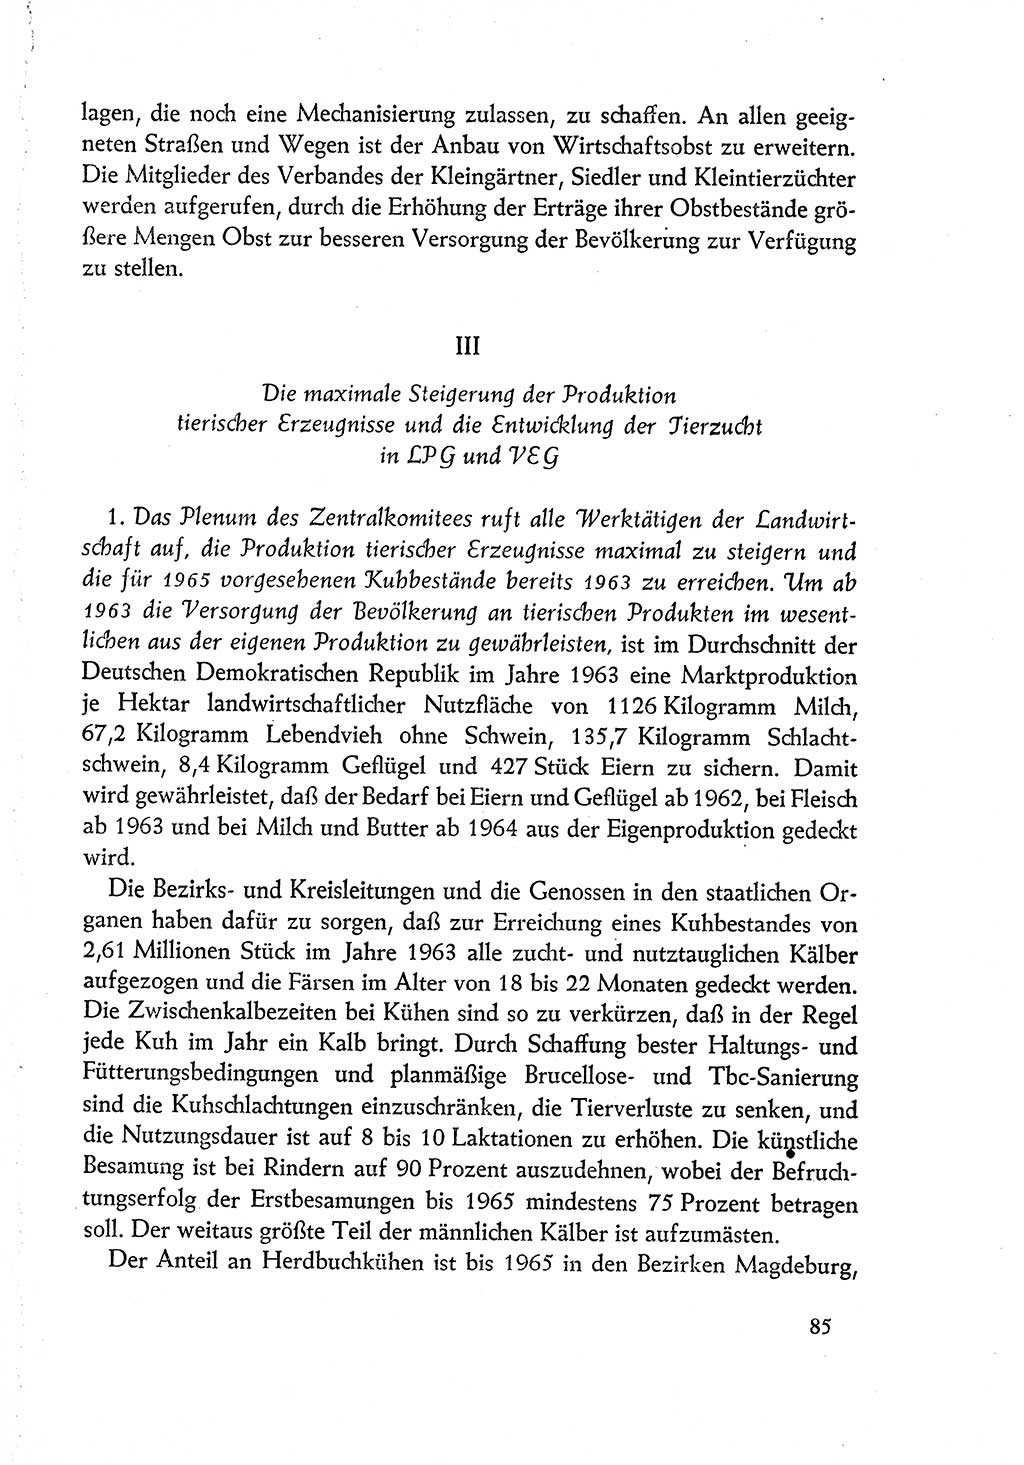 Dokumente der Sozialistischen Einheitspartei Deutschlands (SED) [Deutsche Demokratische Republik (DDR)] 1960-1961, Seite 85 (Dok. SED DDR 1960-1961, S. 85)